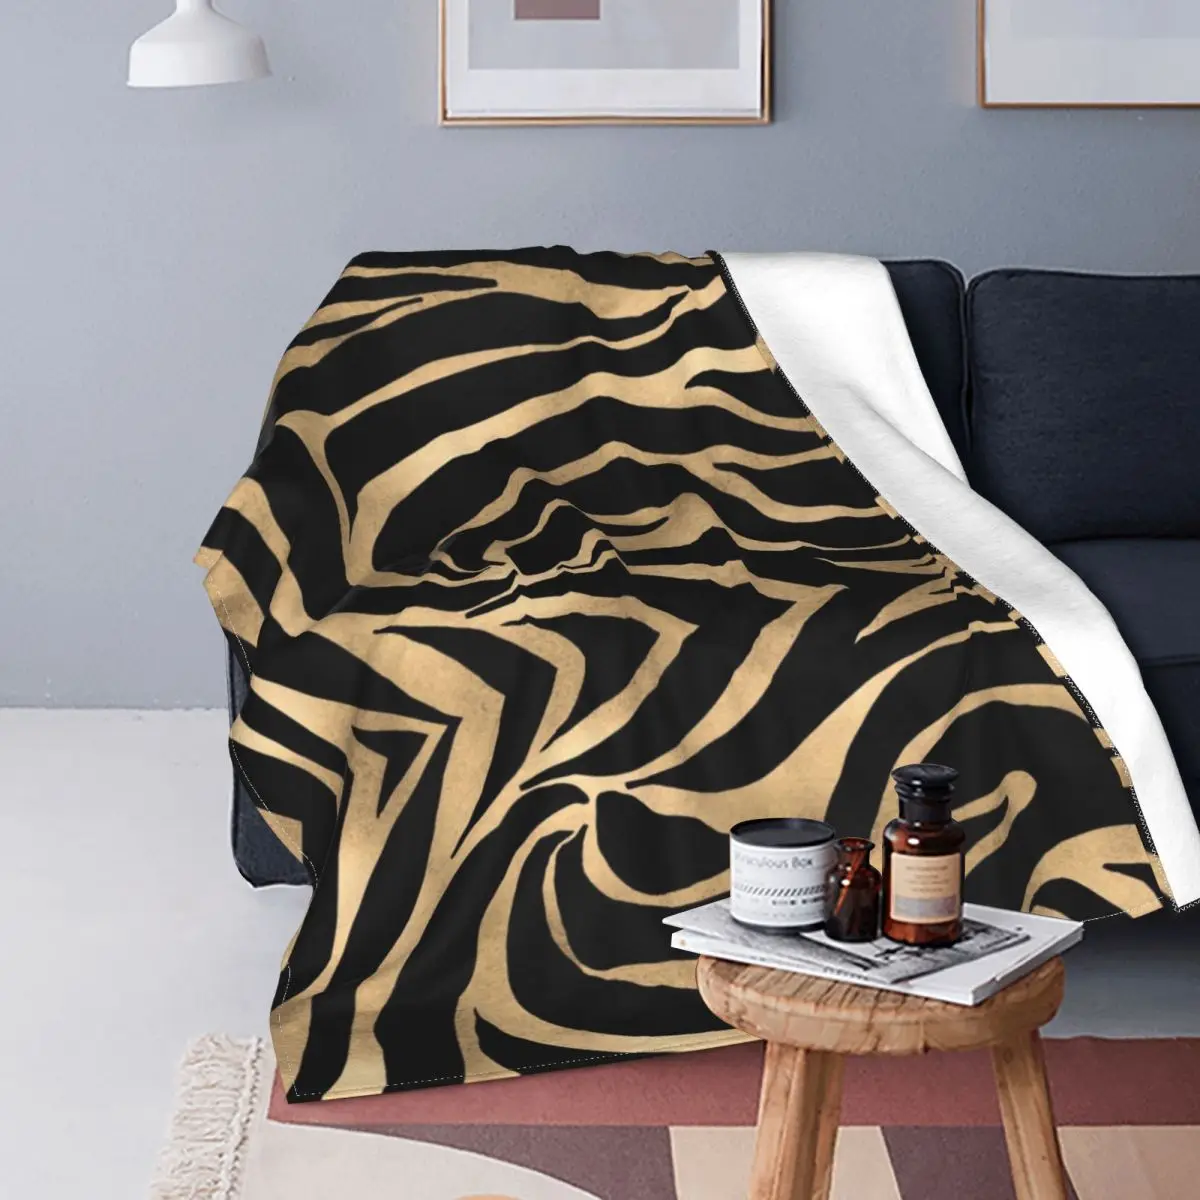 Армейский камуфляж, одеяла с принтом зебры, леопарда, тигра, текстура кожи животного, плюшевая новинка, мягкие одеяла для кровати-покрывала 0